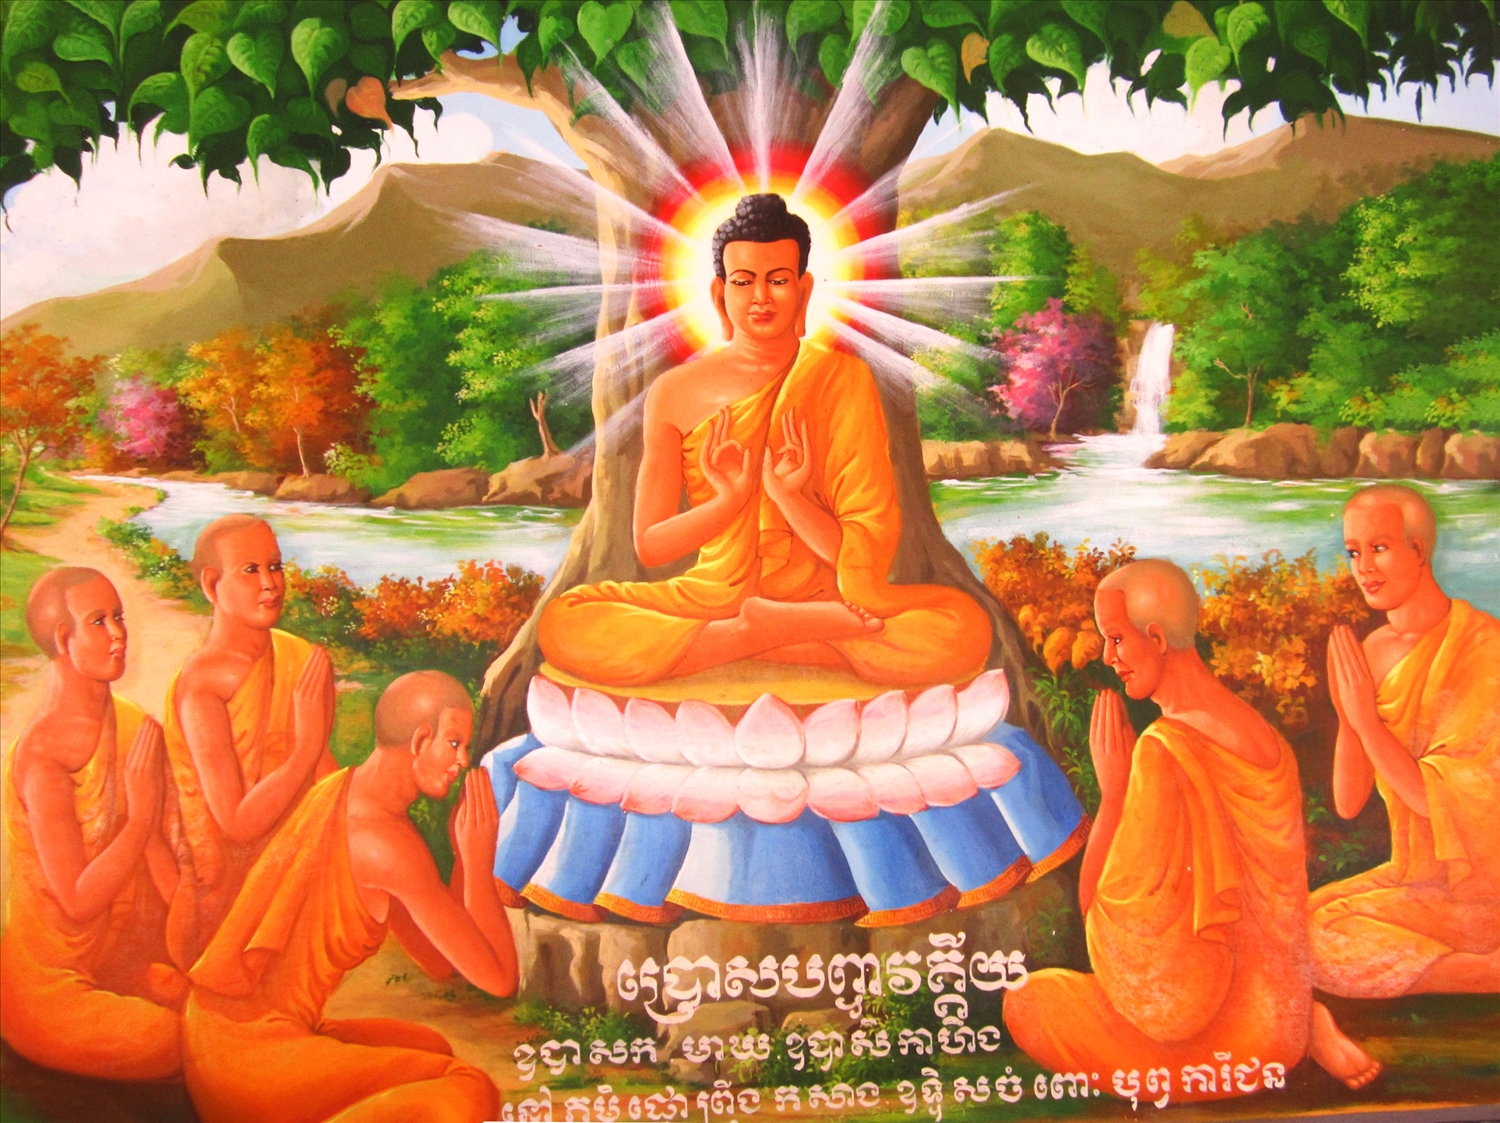 Nhất Phật Giáo Đạo Phật Giáo Đạo Phật Mẫu Chuẩn Đề  Đơn giản vẽ tay đứng  Nhất Trạm Phật png tải về  Miễn phí trong suốt Nghệ Thuật png Tải về